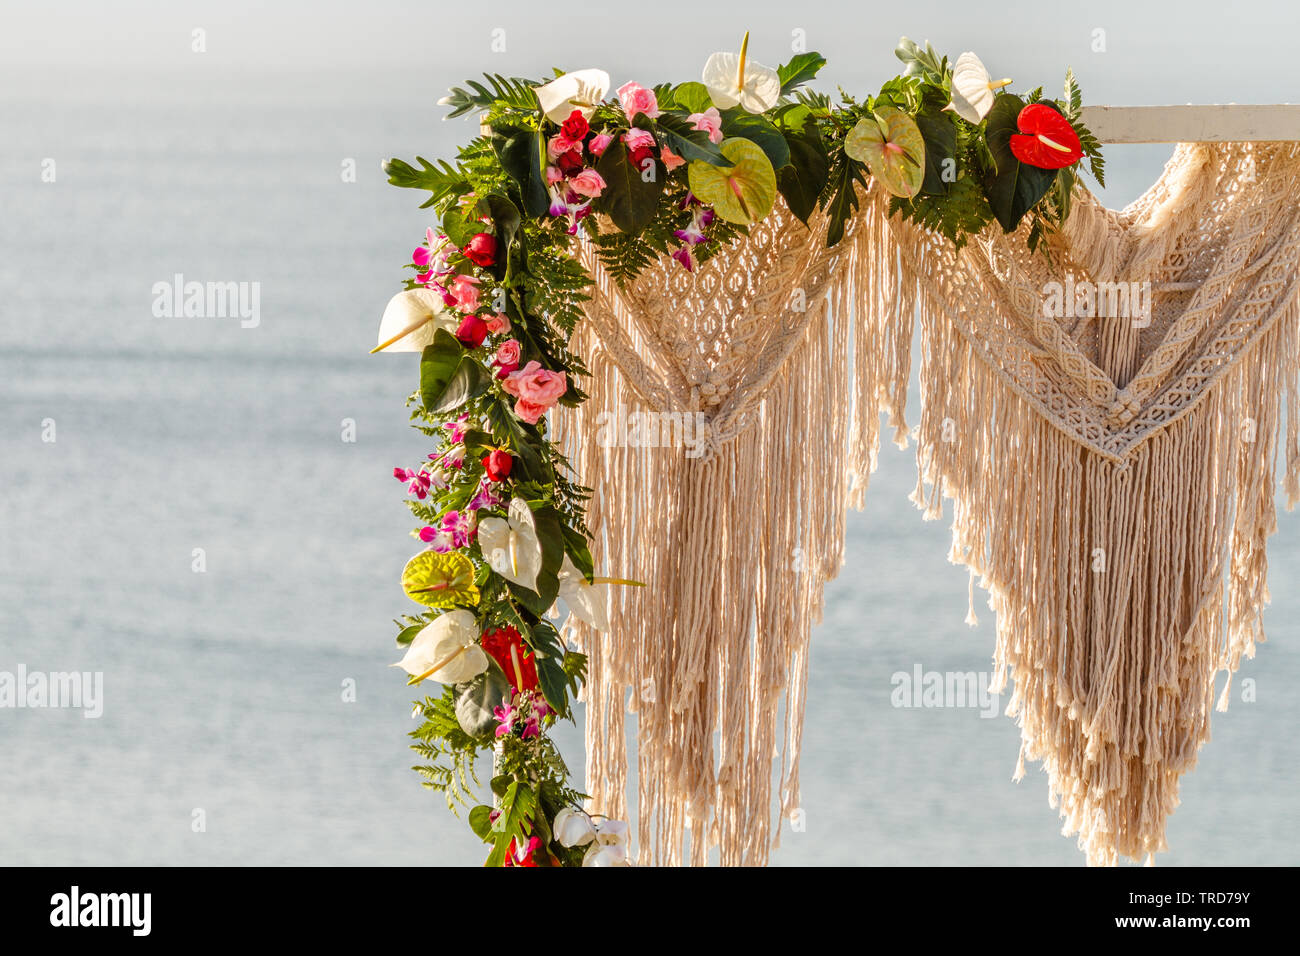 Détail d'une arche de mariage décoré avec style Boho dans macrame et fleurs fraîches près de l'océan pour une cérémonie. Concept d'un mariage tropical. Banque D'Images